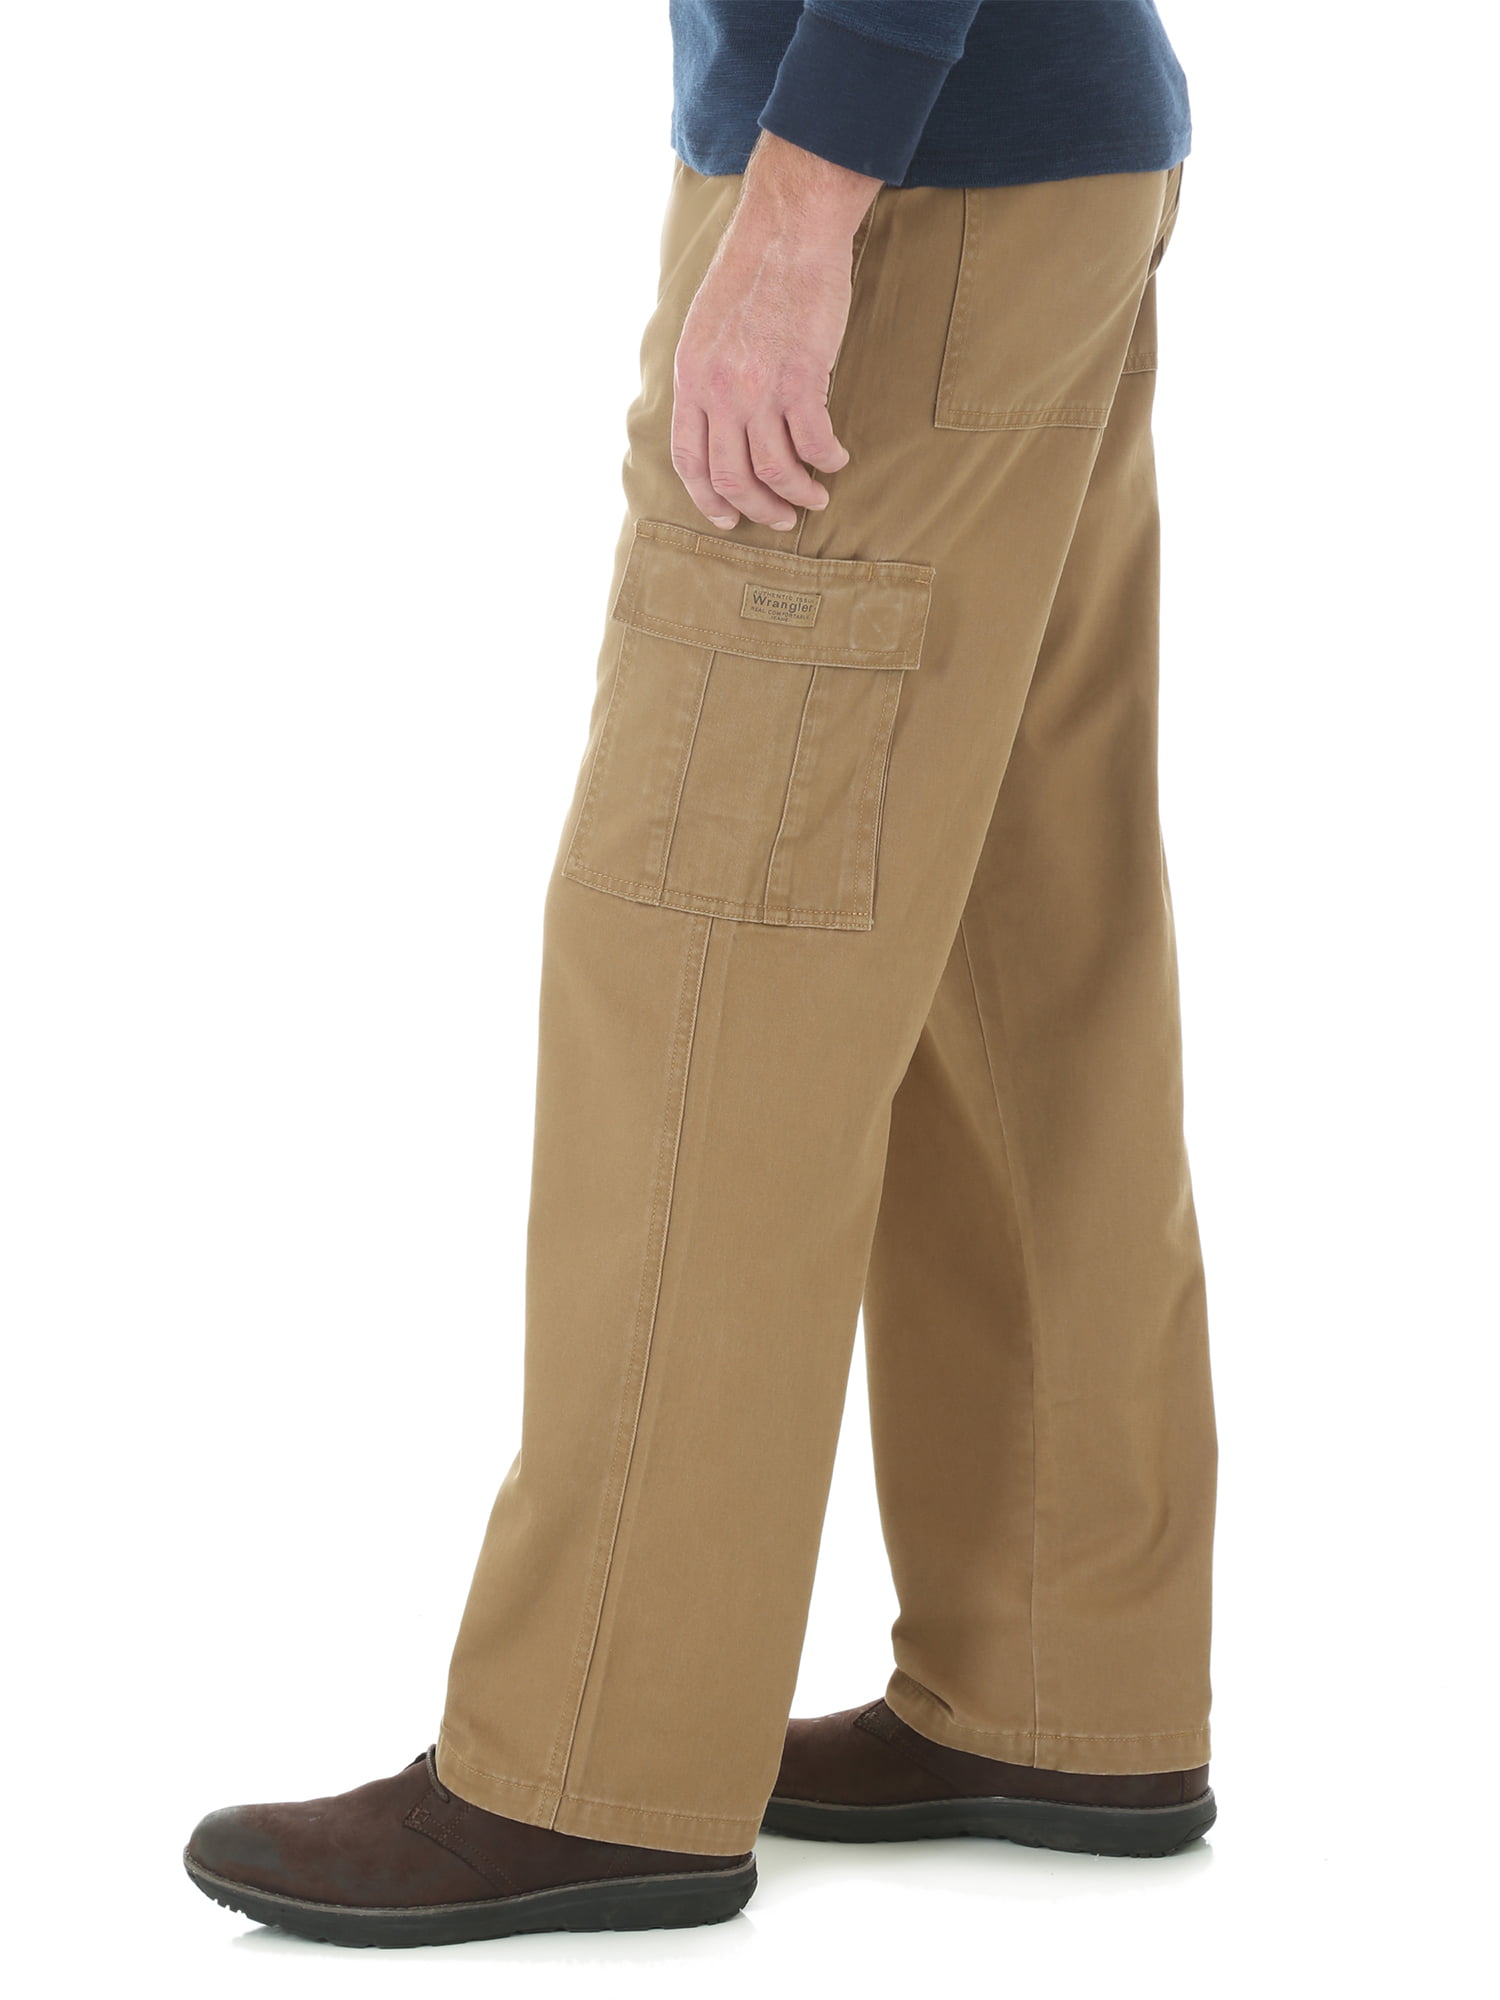 Wrangler Comfort Solutions Series Pants Flat Front Men's Size 46 × 30  | eBay